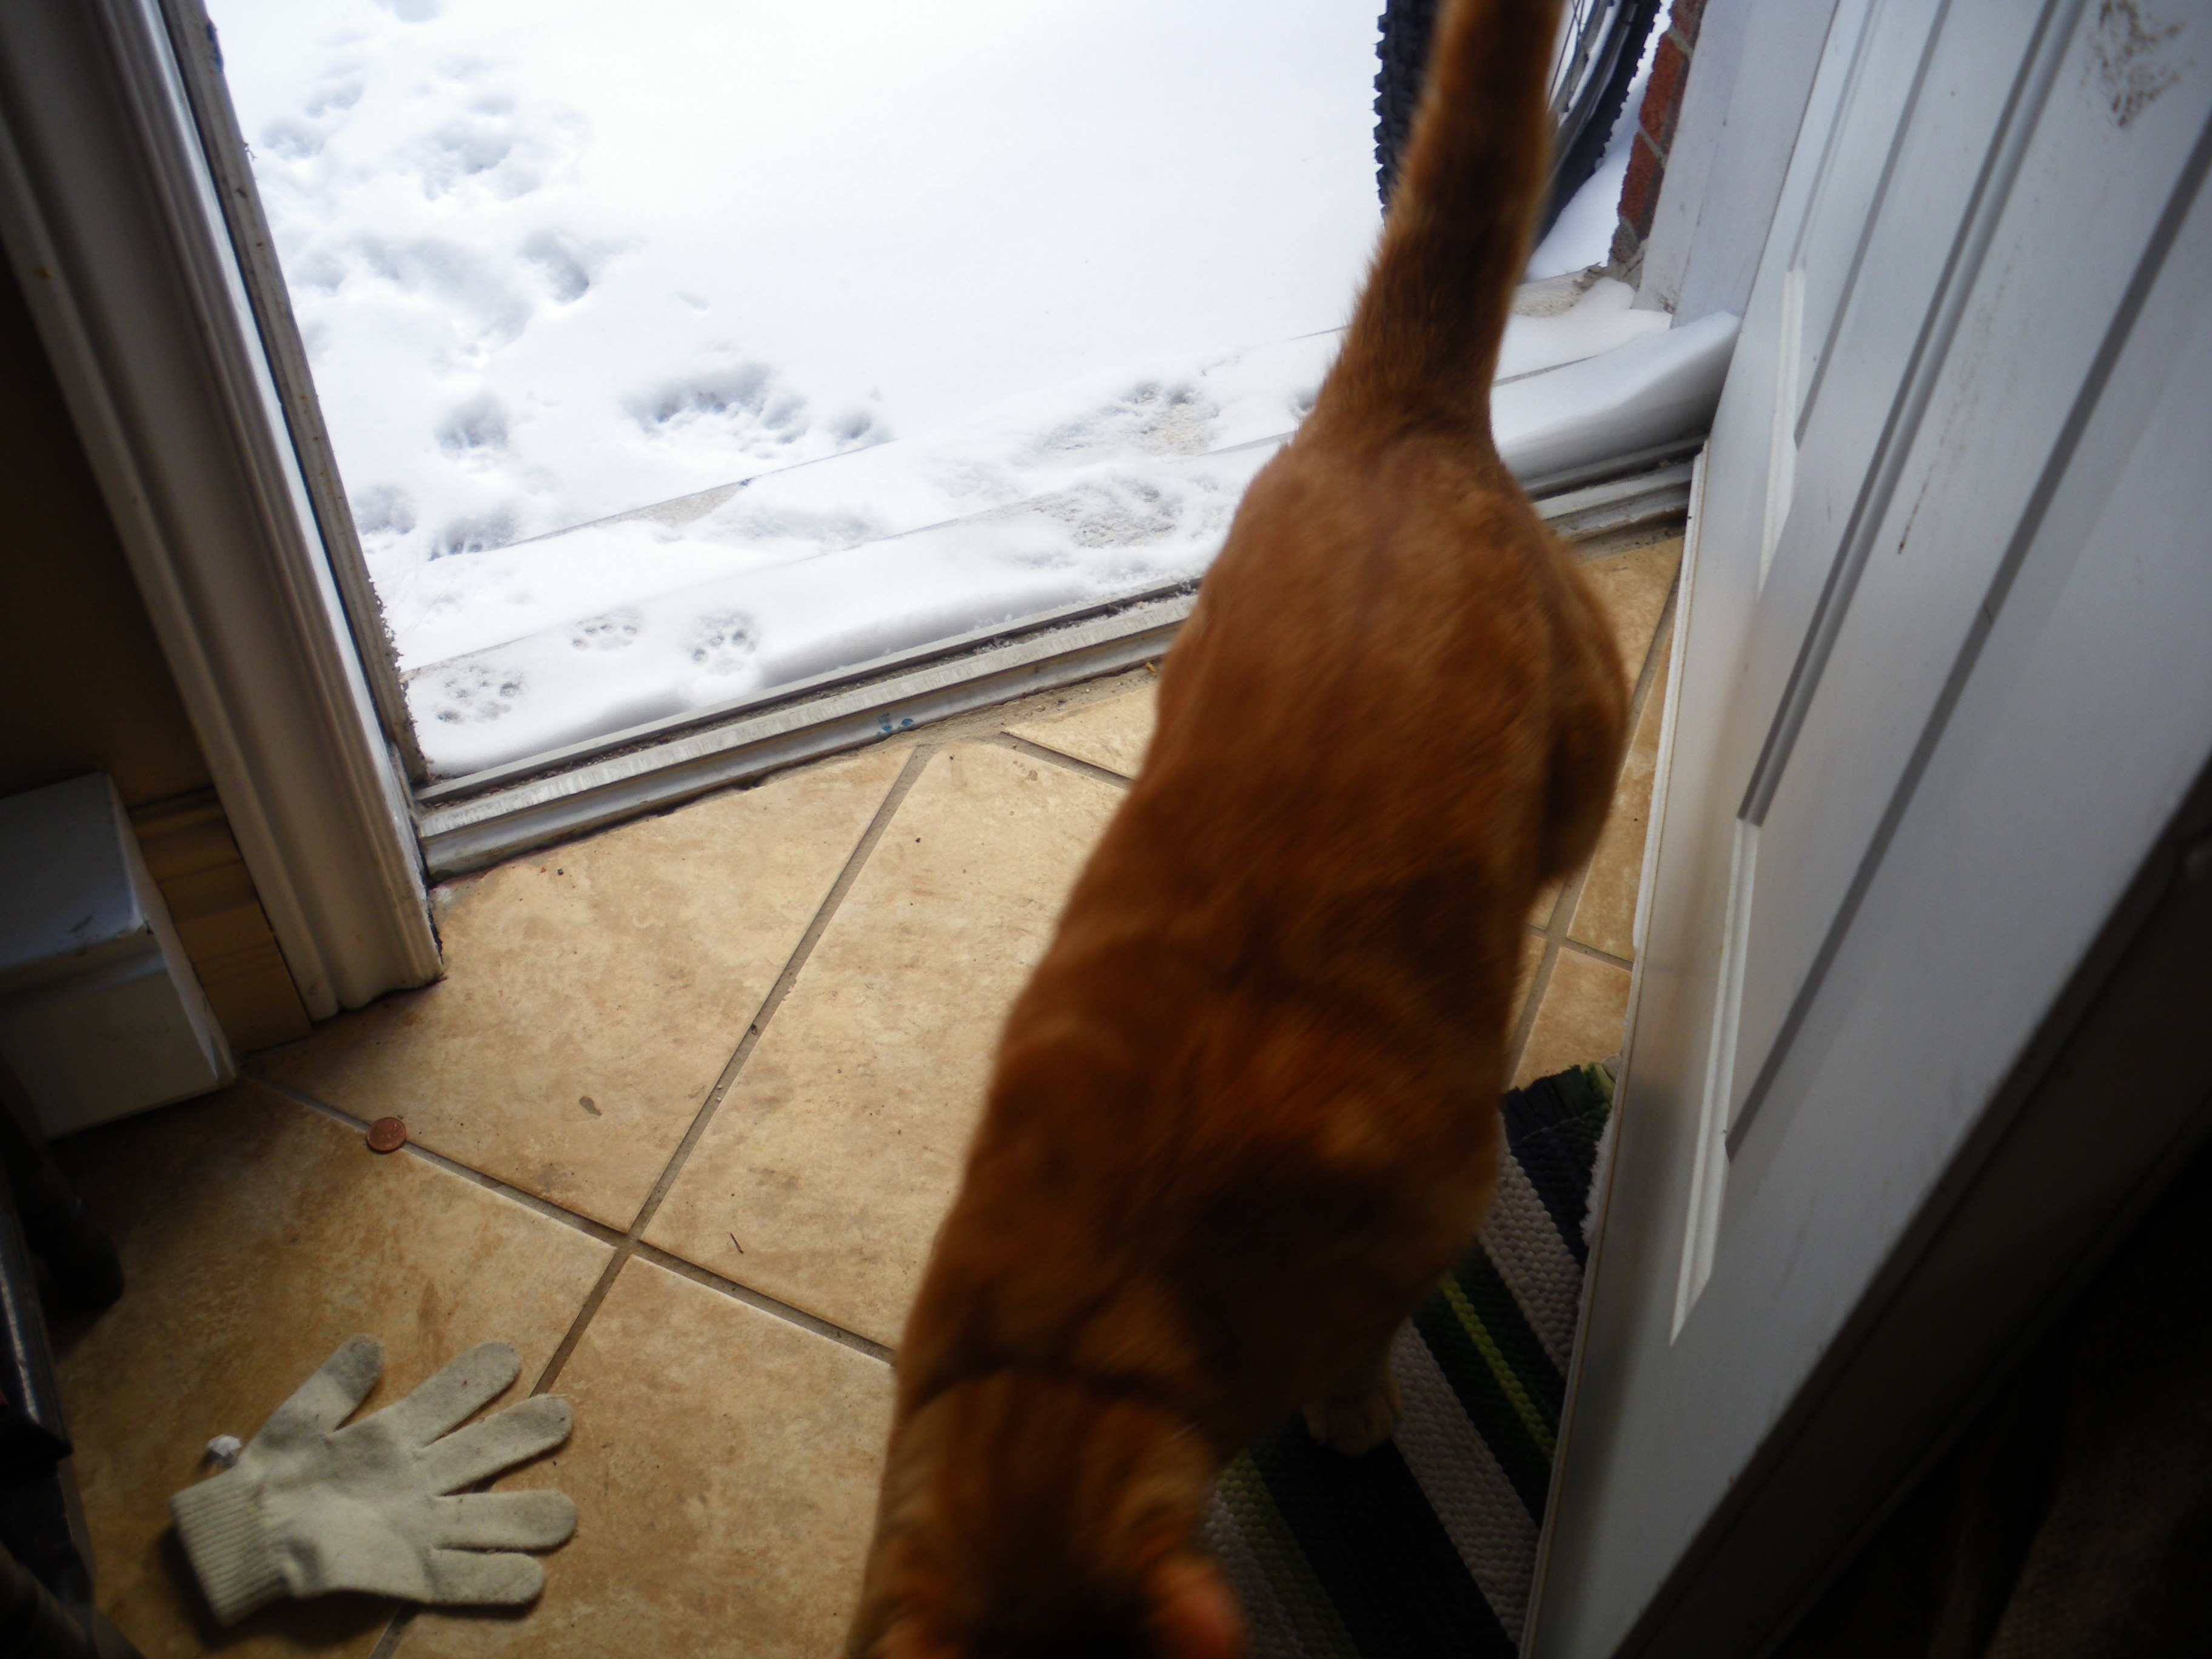 Clément le chat est debout, vue en plongée, rentrant dans la maison après un brève excursion dans la neige, laissant quelques traces de pattes derrière lui dans la neige autrement immaculée.